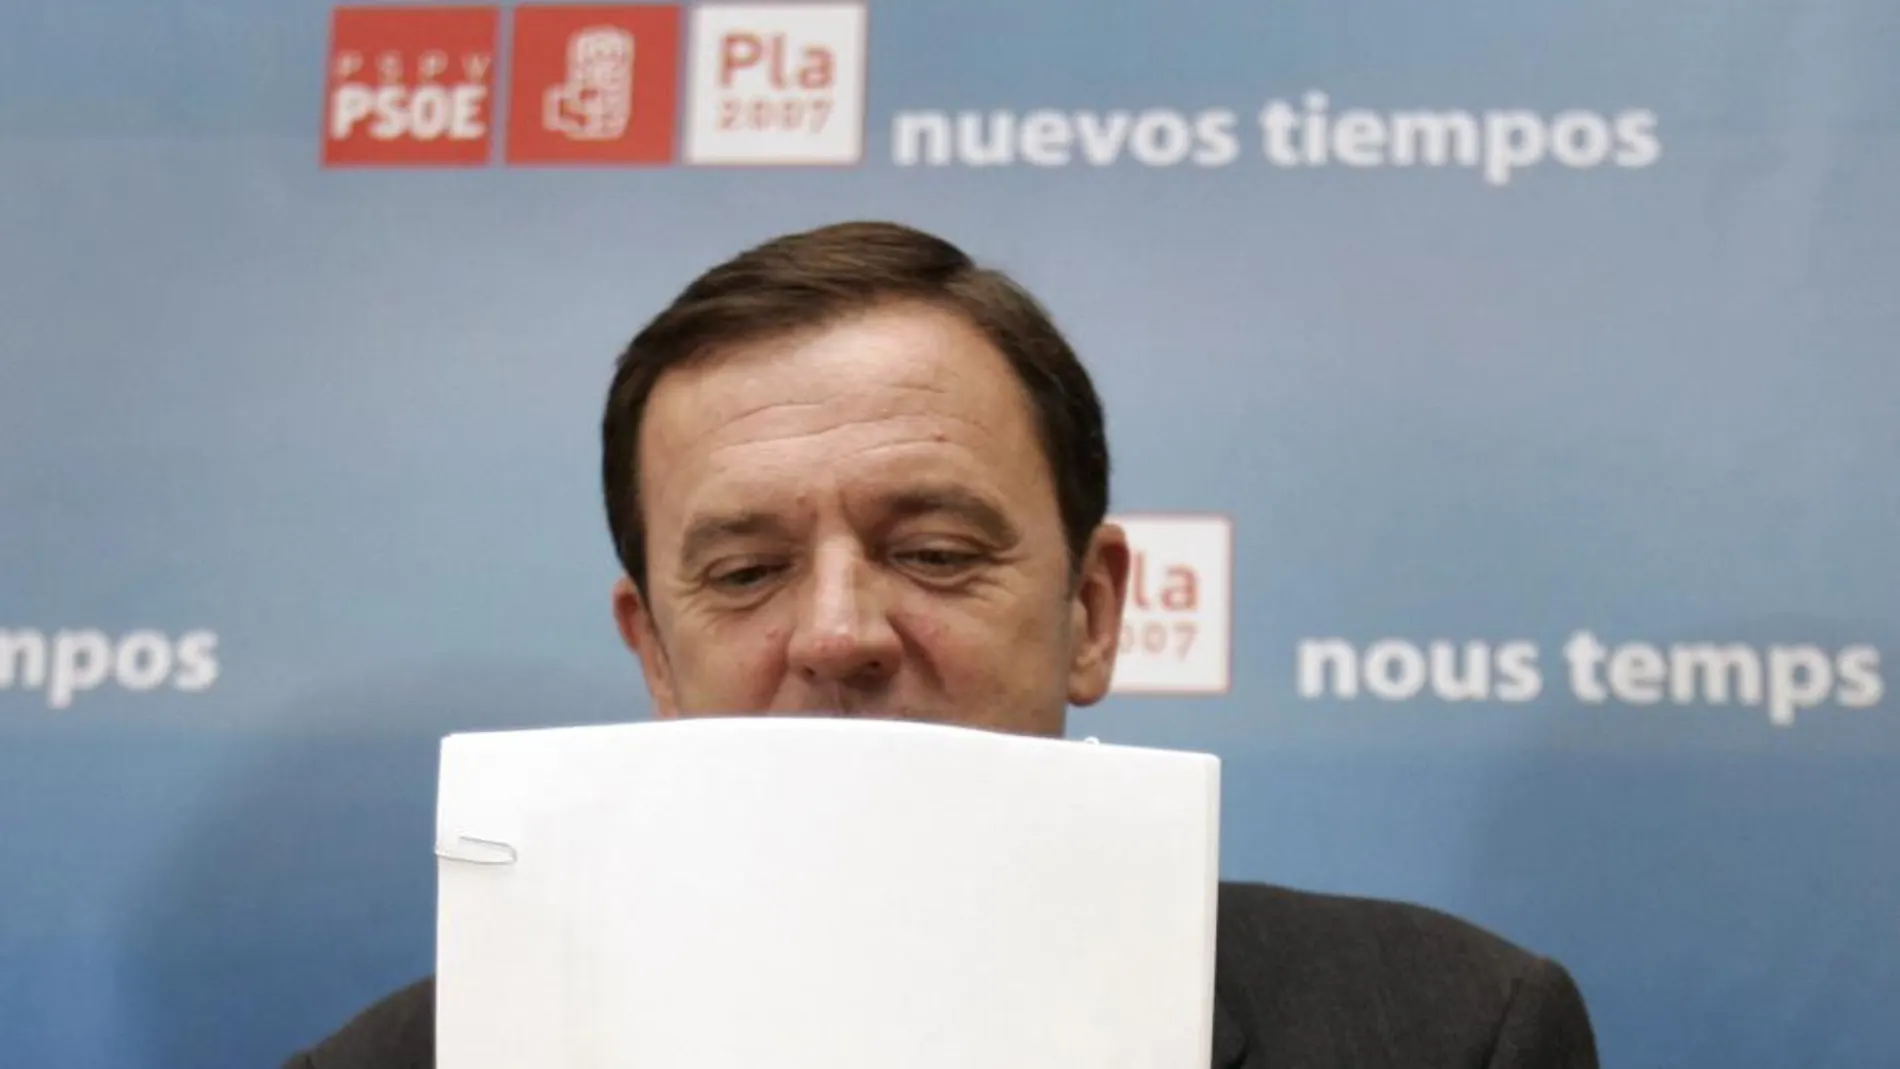 El ex secretario general del PSPV-PSOE, Joan Ignasi Pla